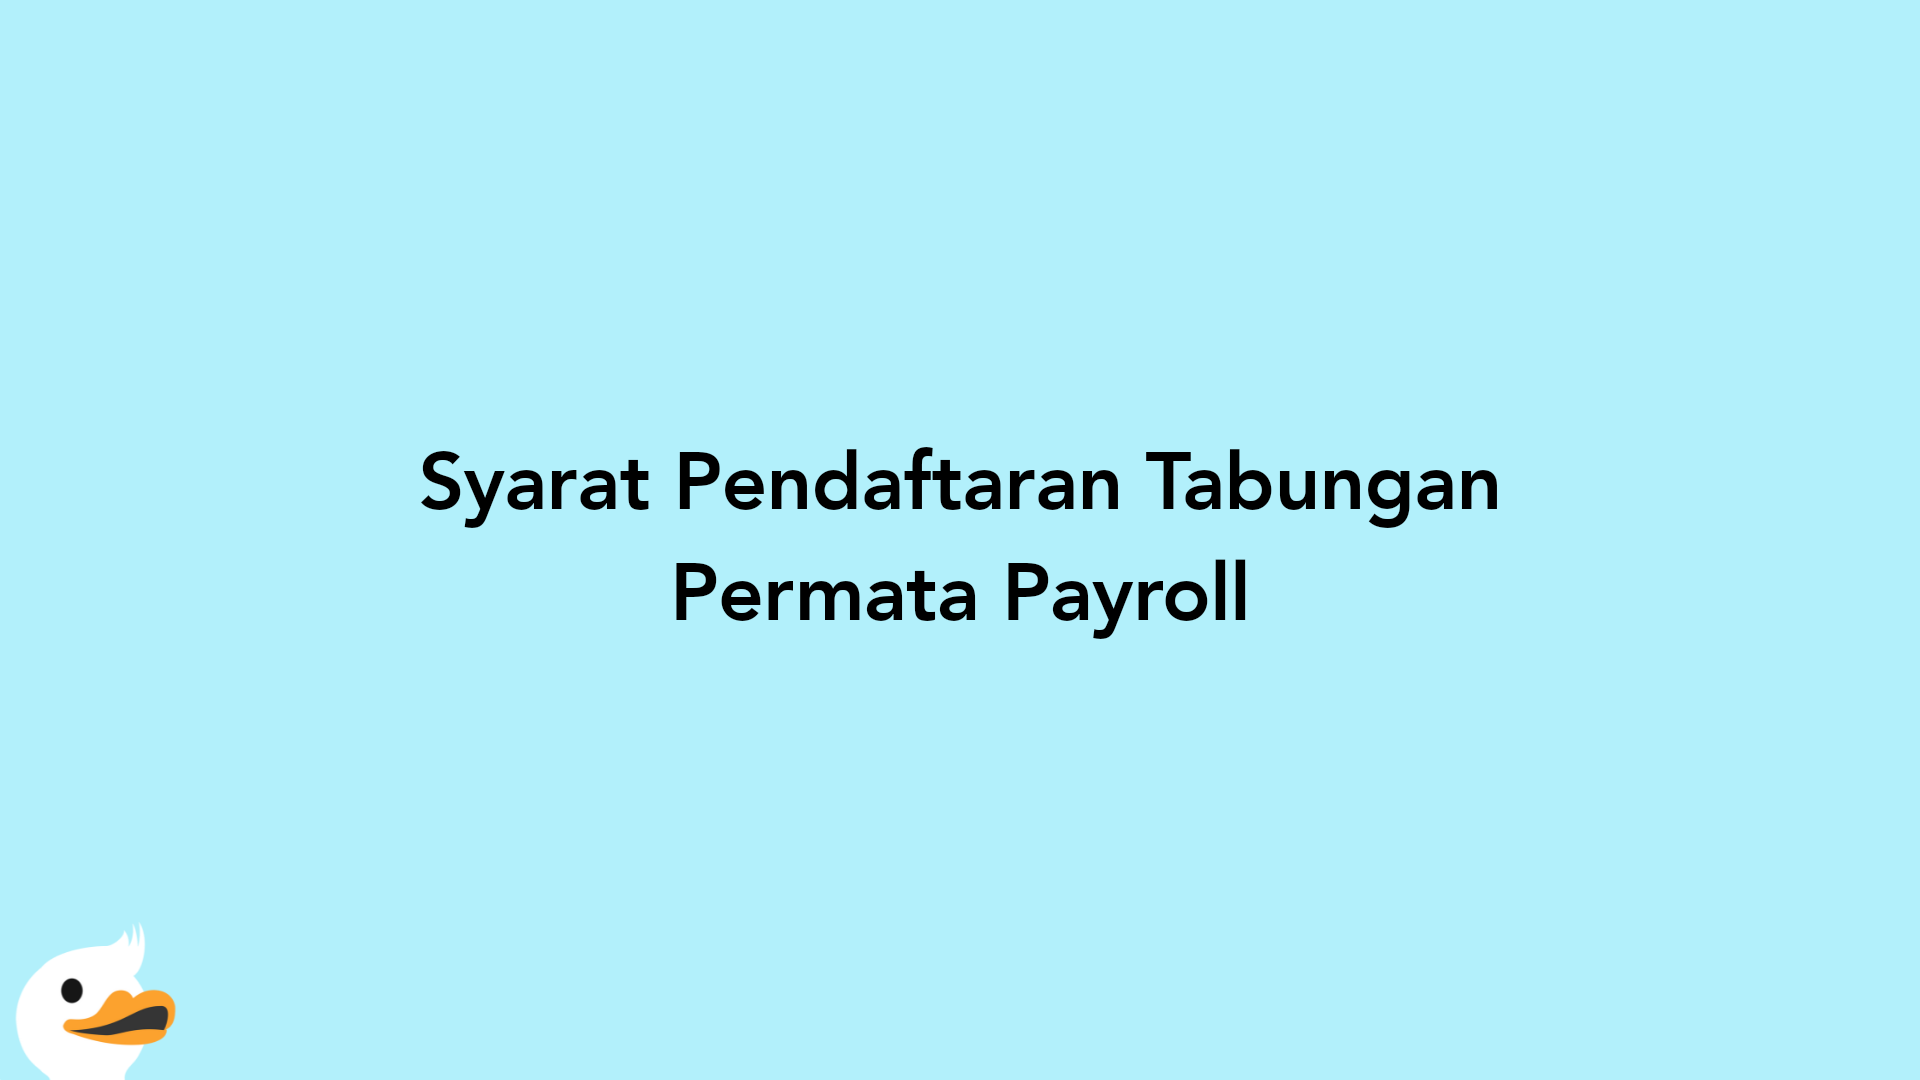 Syarat Pendaftaran Tabungan Permata Payroll